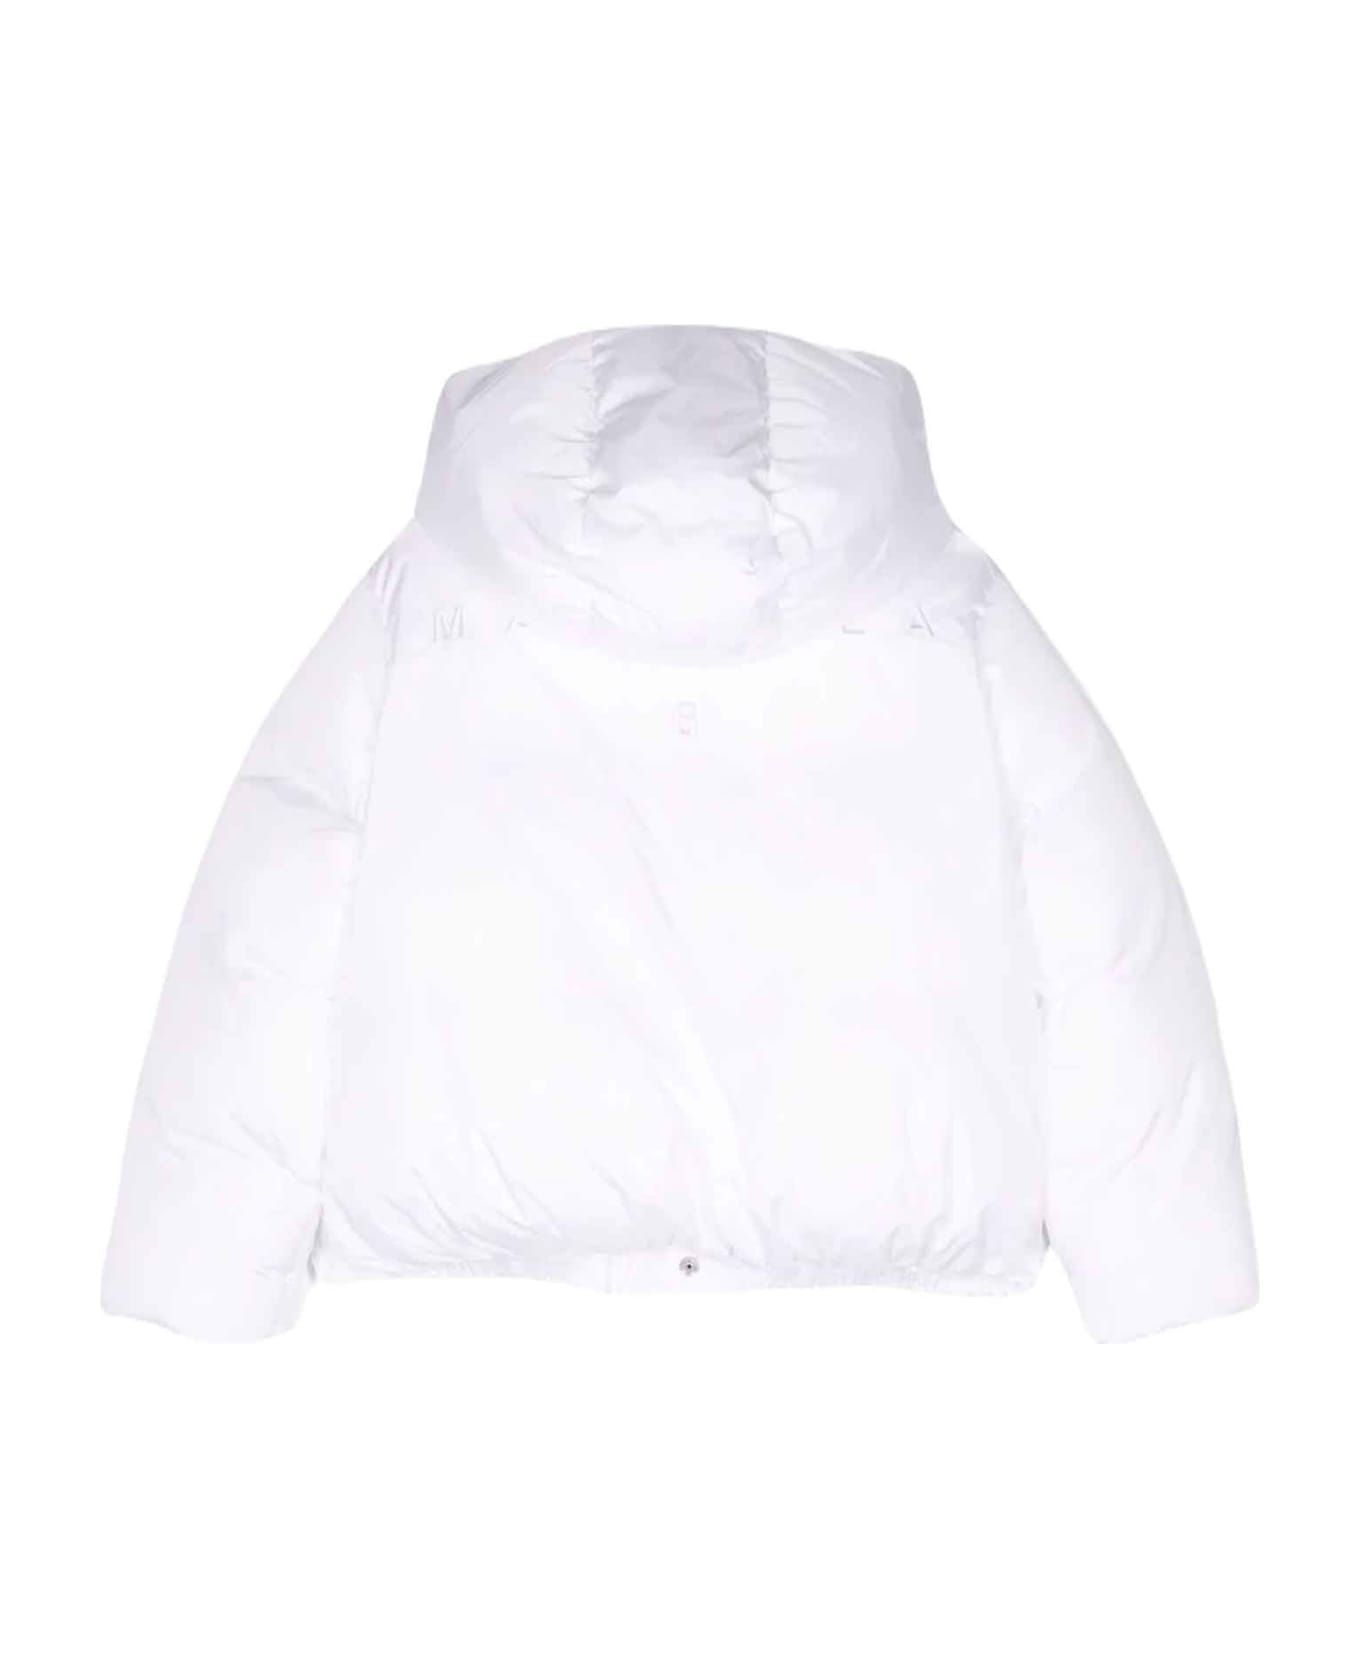 MM6 Maison Margiela White Down Jacket Unisex - Bianco